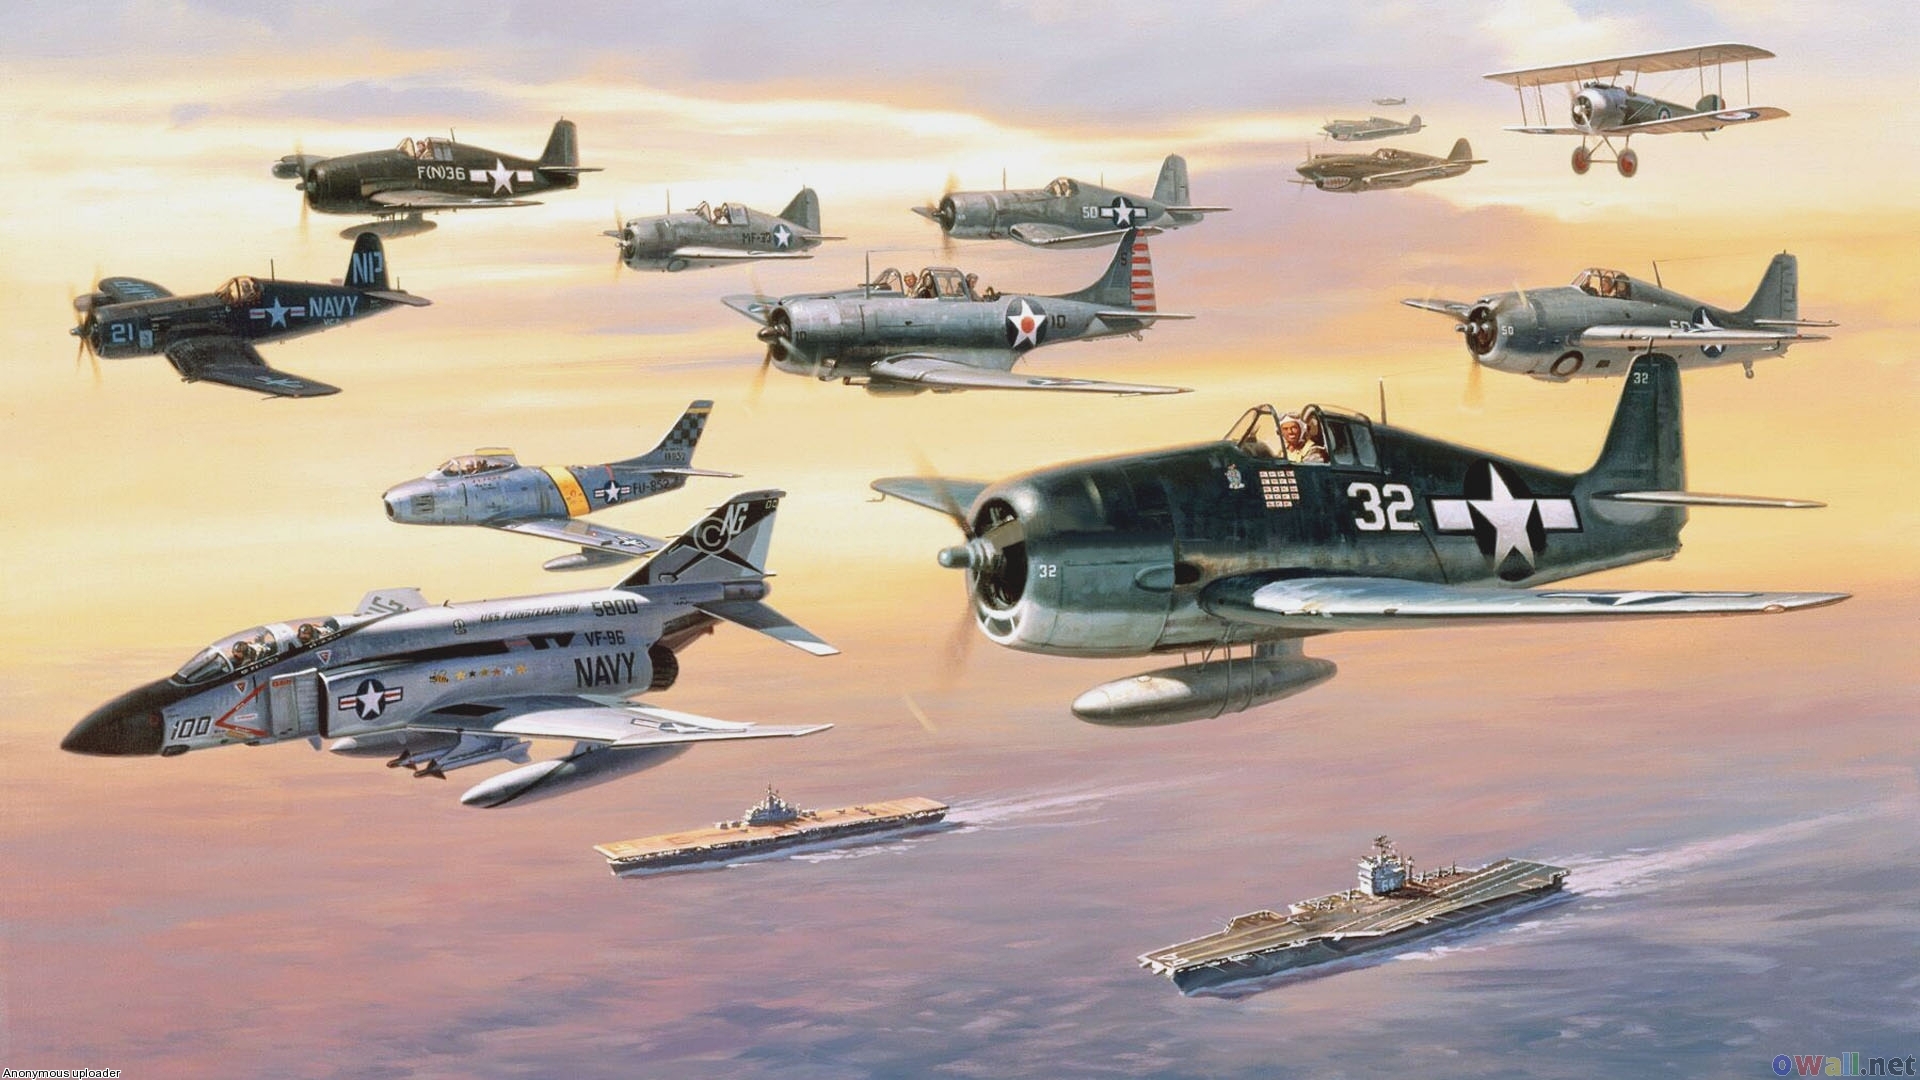 45+] Naval Aviation Wallpaper - WallpaperSafari